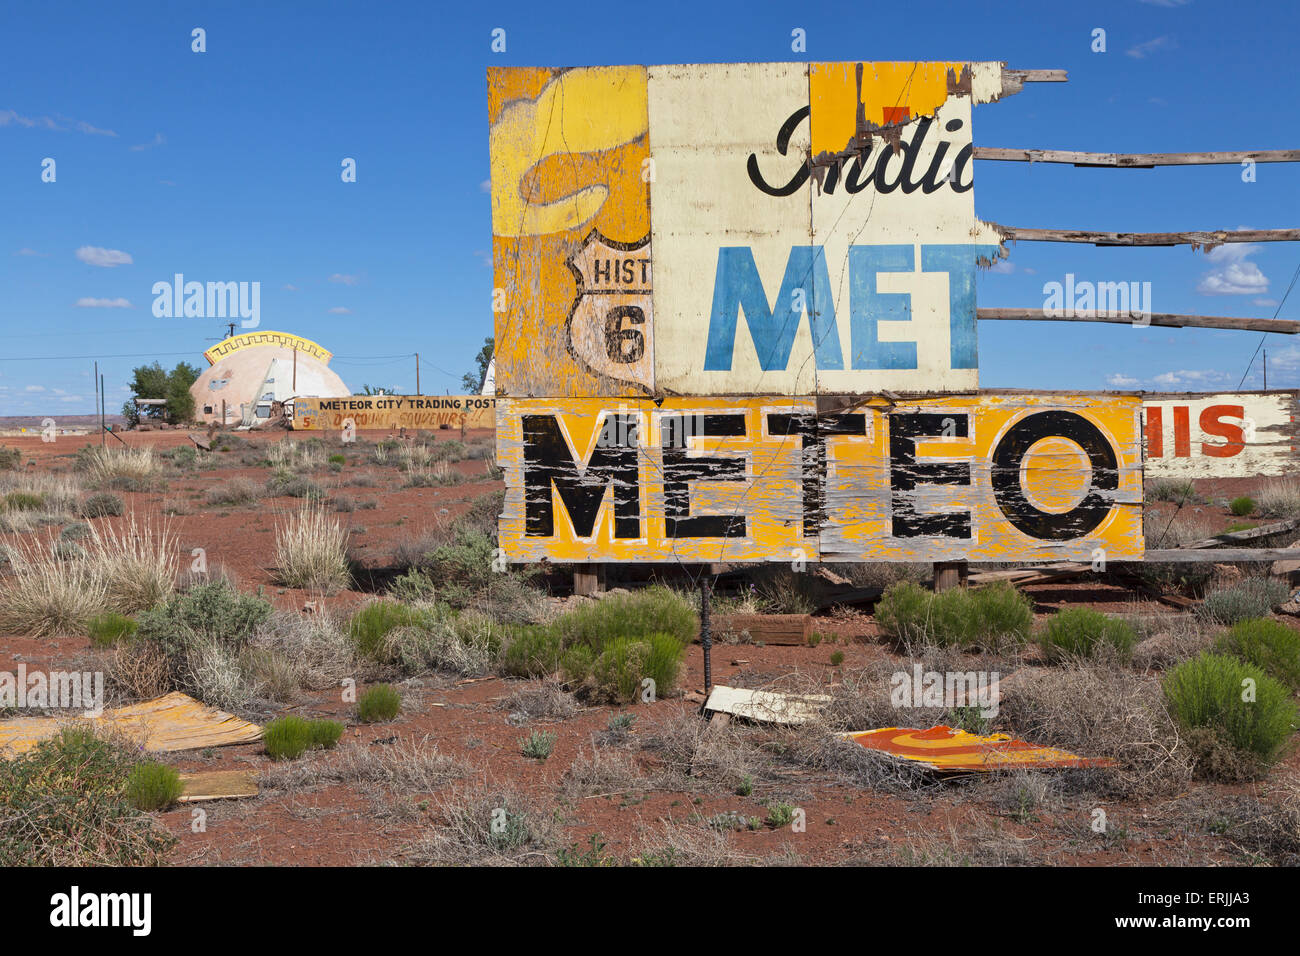 Meteor Stadt Handelsposten entlang der Route 66 westlich von Winslow, Arizona. Stockfoto